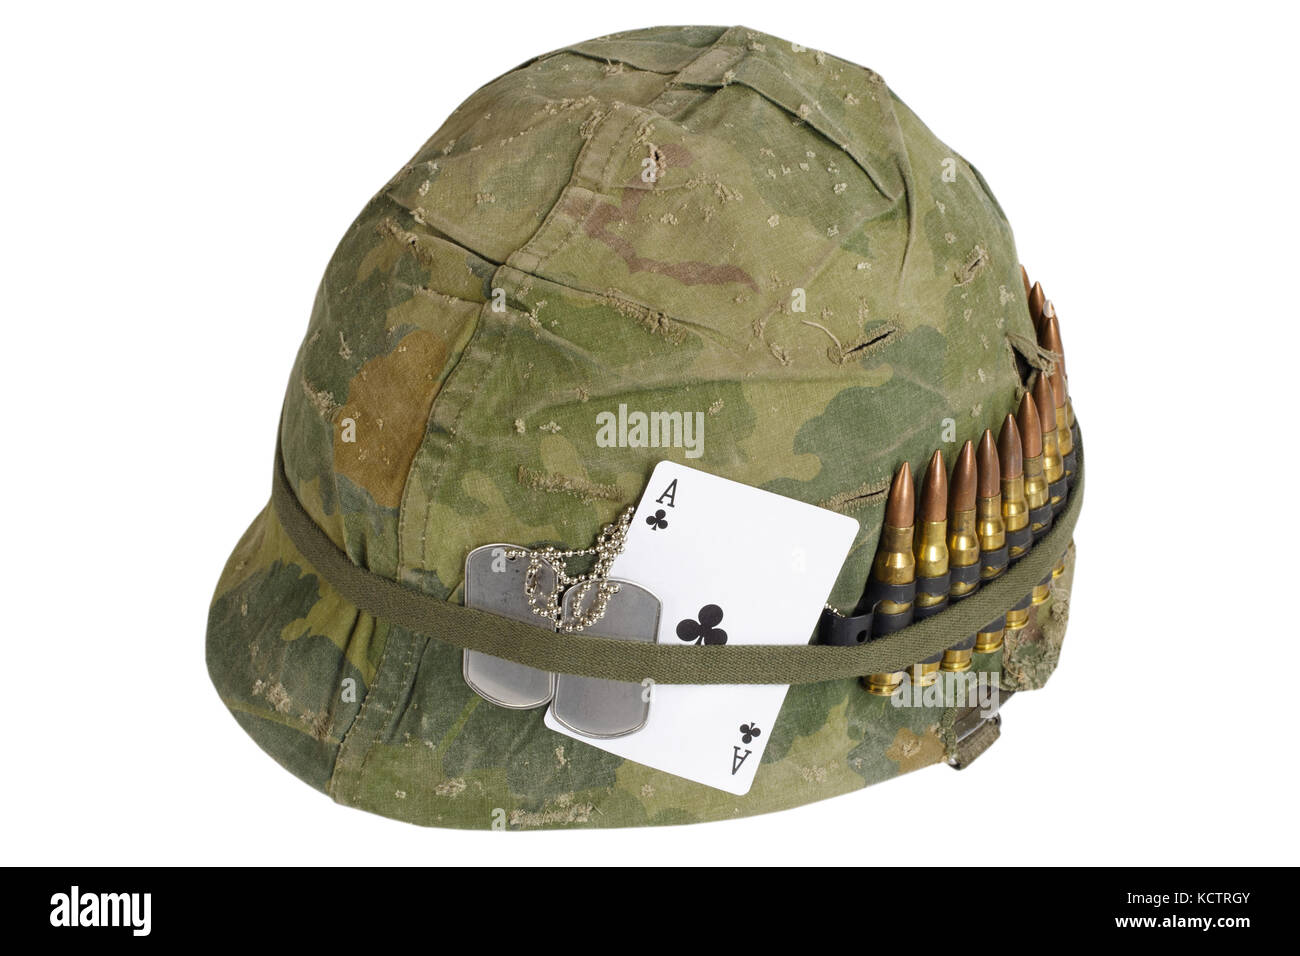 Us-Armee Helm Vietnam Krieg mit Camouflage Cover und Munition Riemen, Dog  Tag und Amulett - Ace of Clubs spielen Karte Stockfotografie - Alamy